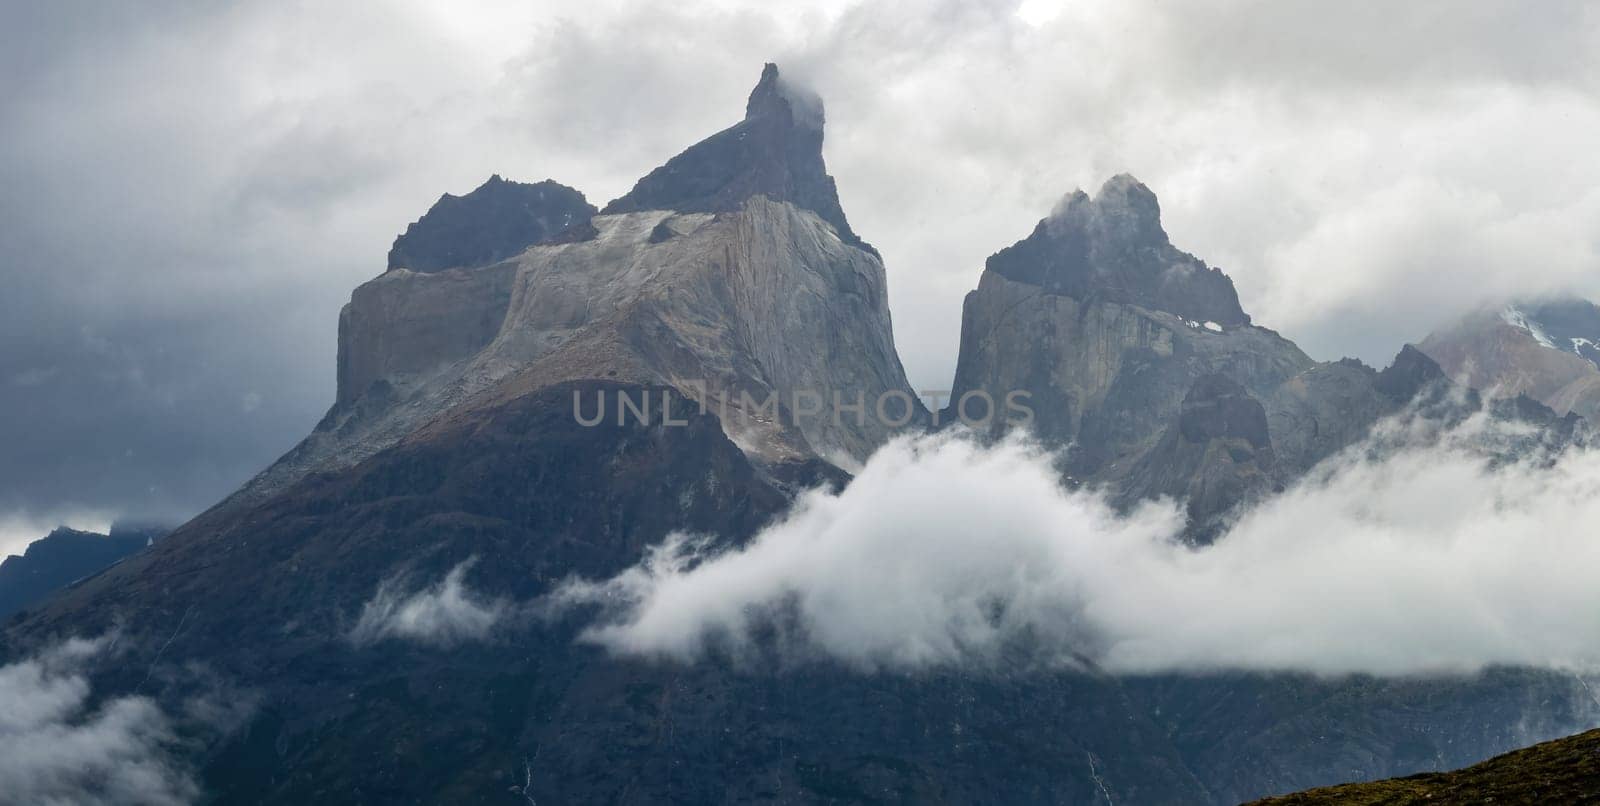 Majestic Mountain Peaks Emerge from Misty Clouds by FerradalFCG